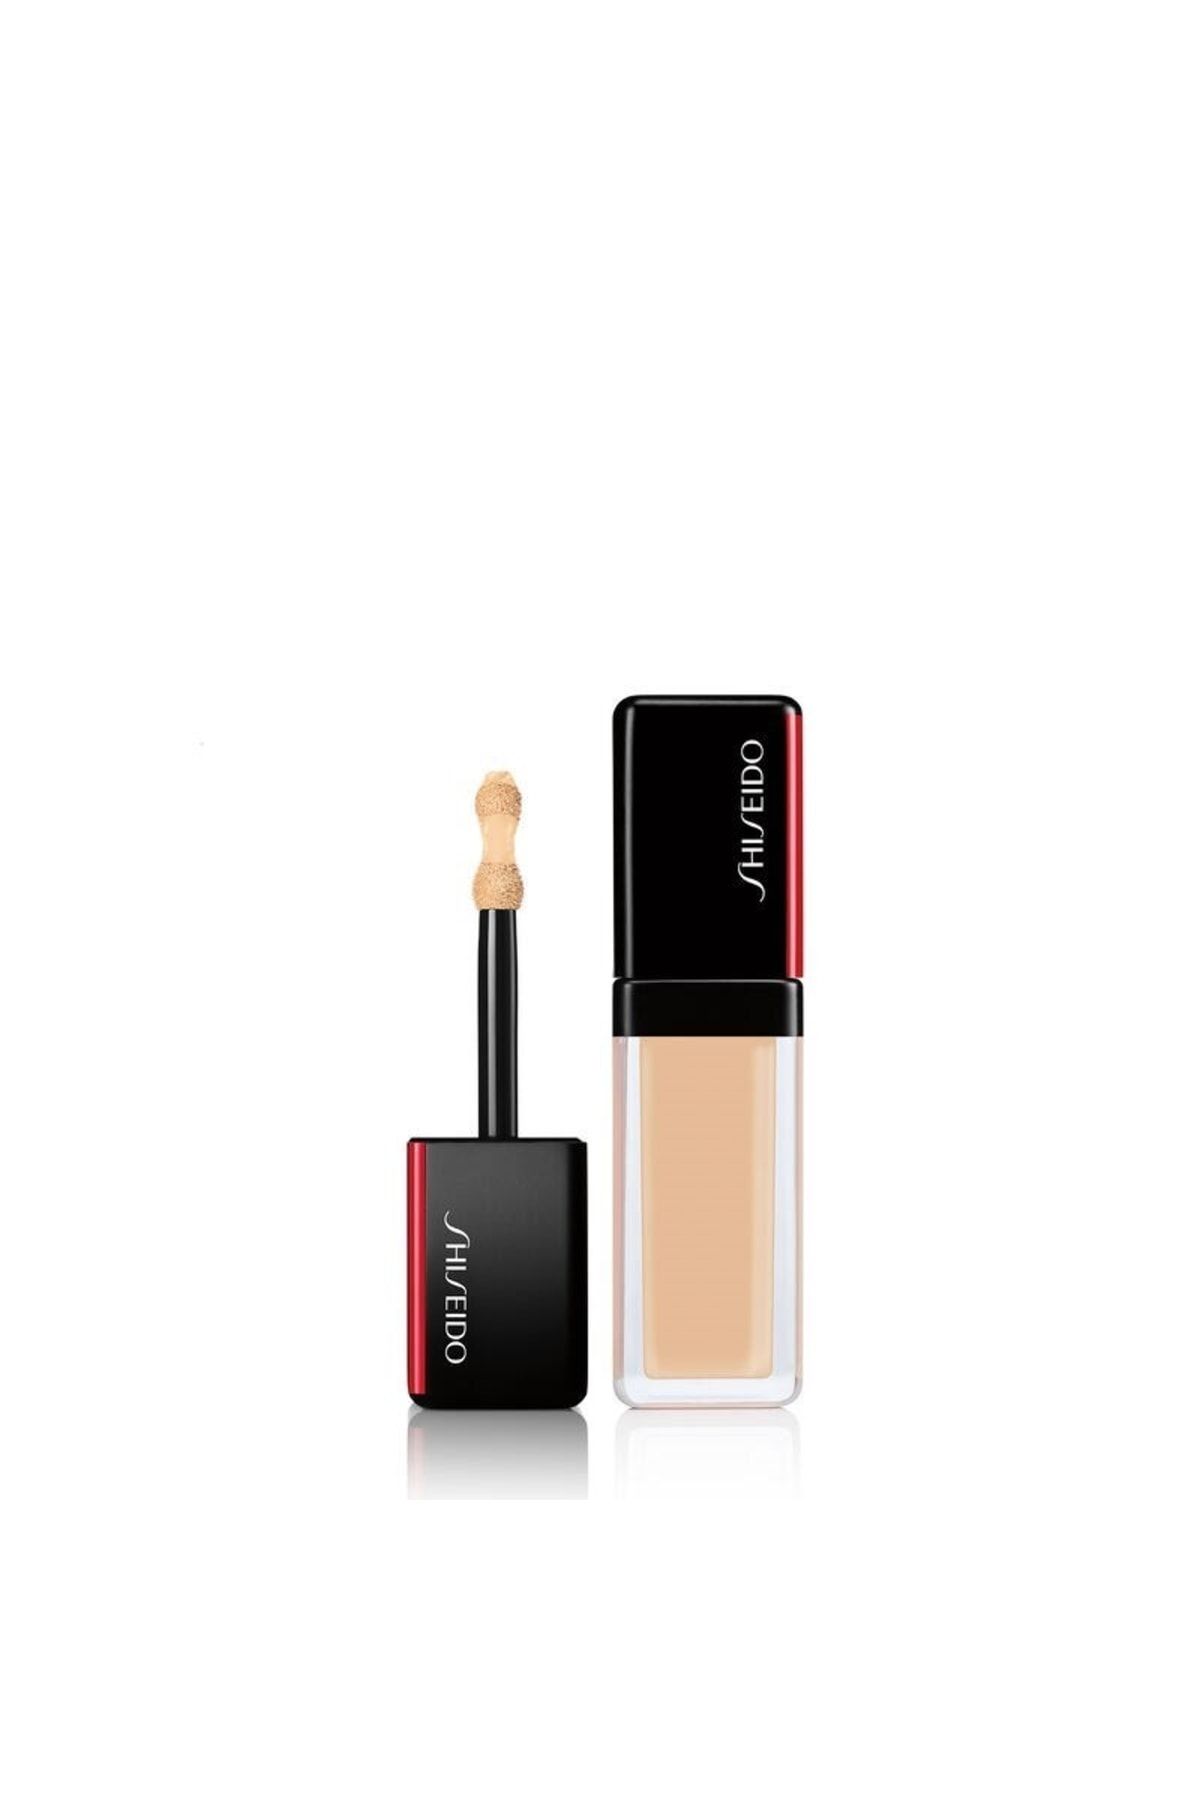 Shiseido Synchro Skın Self-refreshıng Concealer Yüksek Kapatıcılığa Sahip Dayanıklı Likit Kapatıcı 201 Light